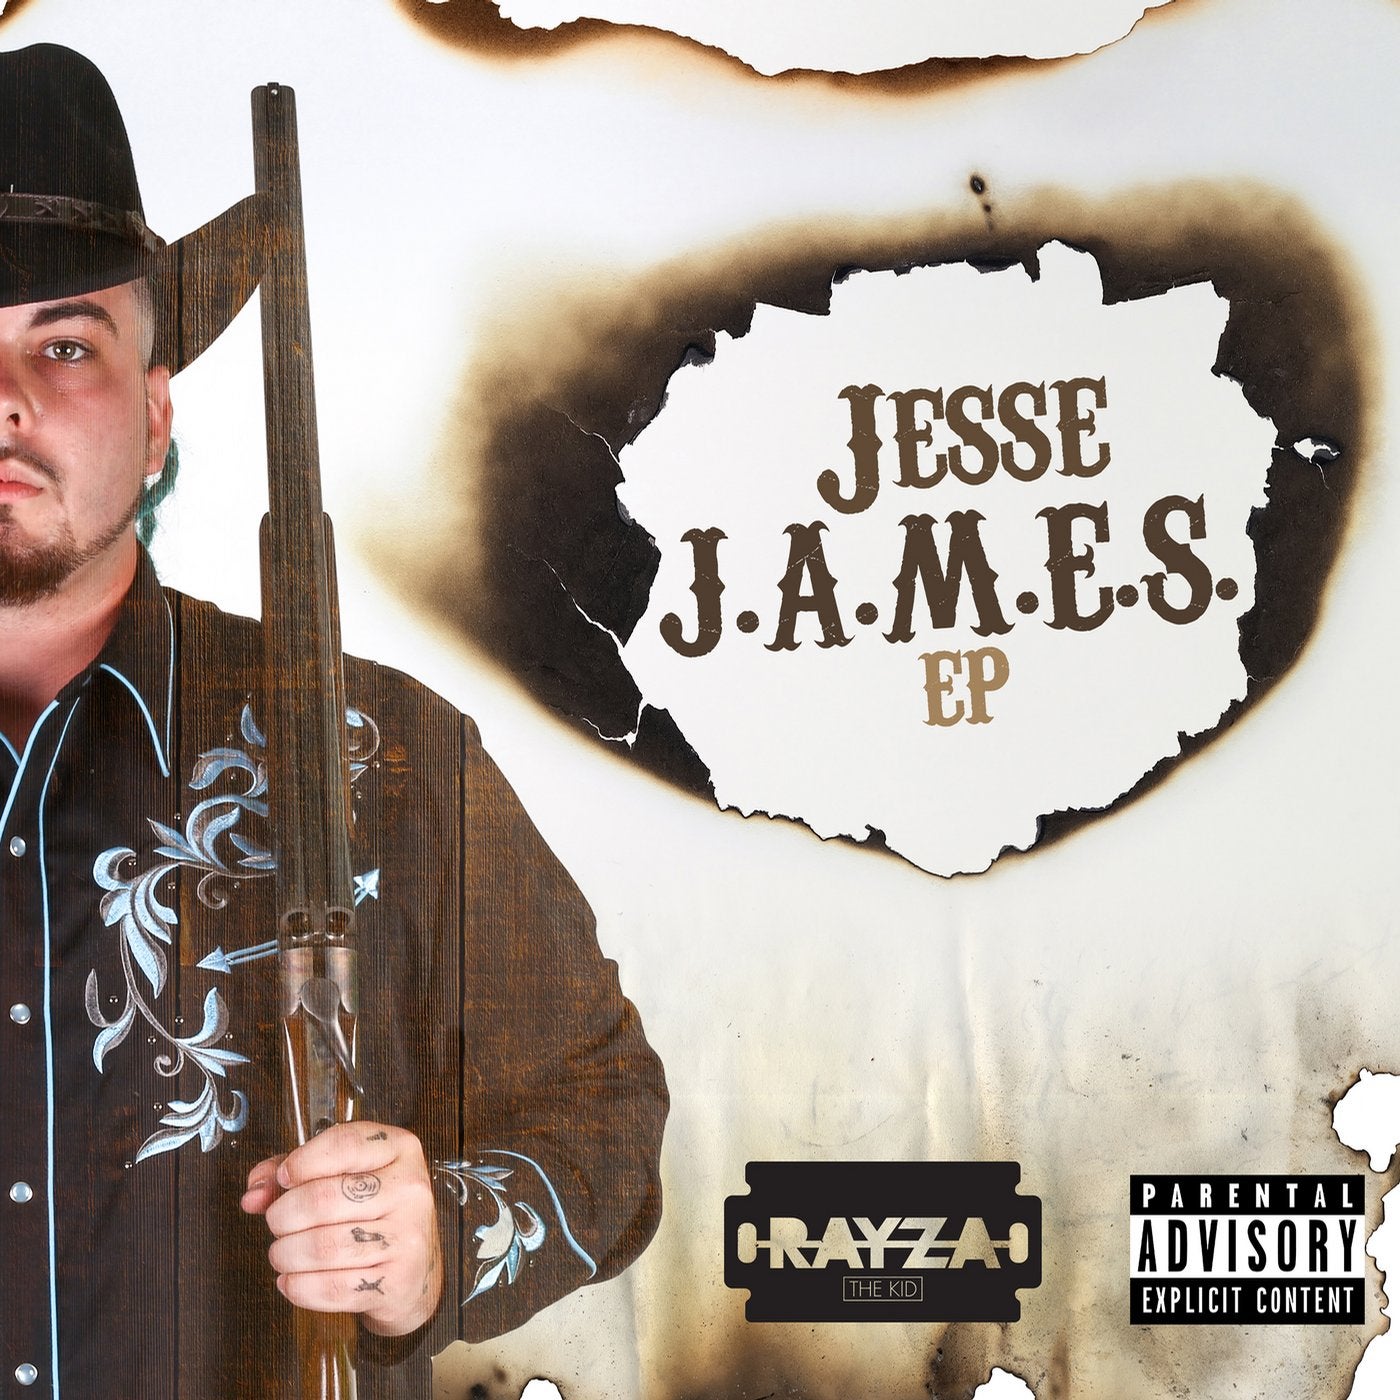 Jesse J.A.M.E.S. EP